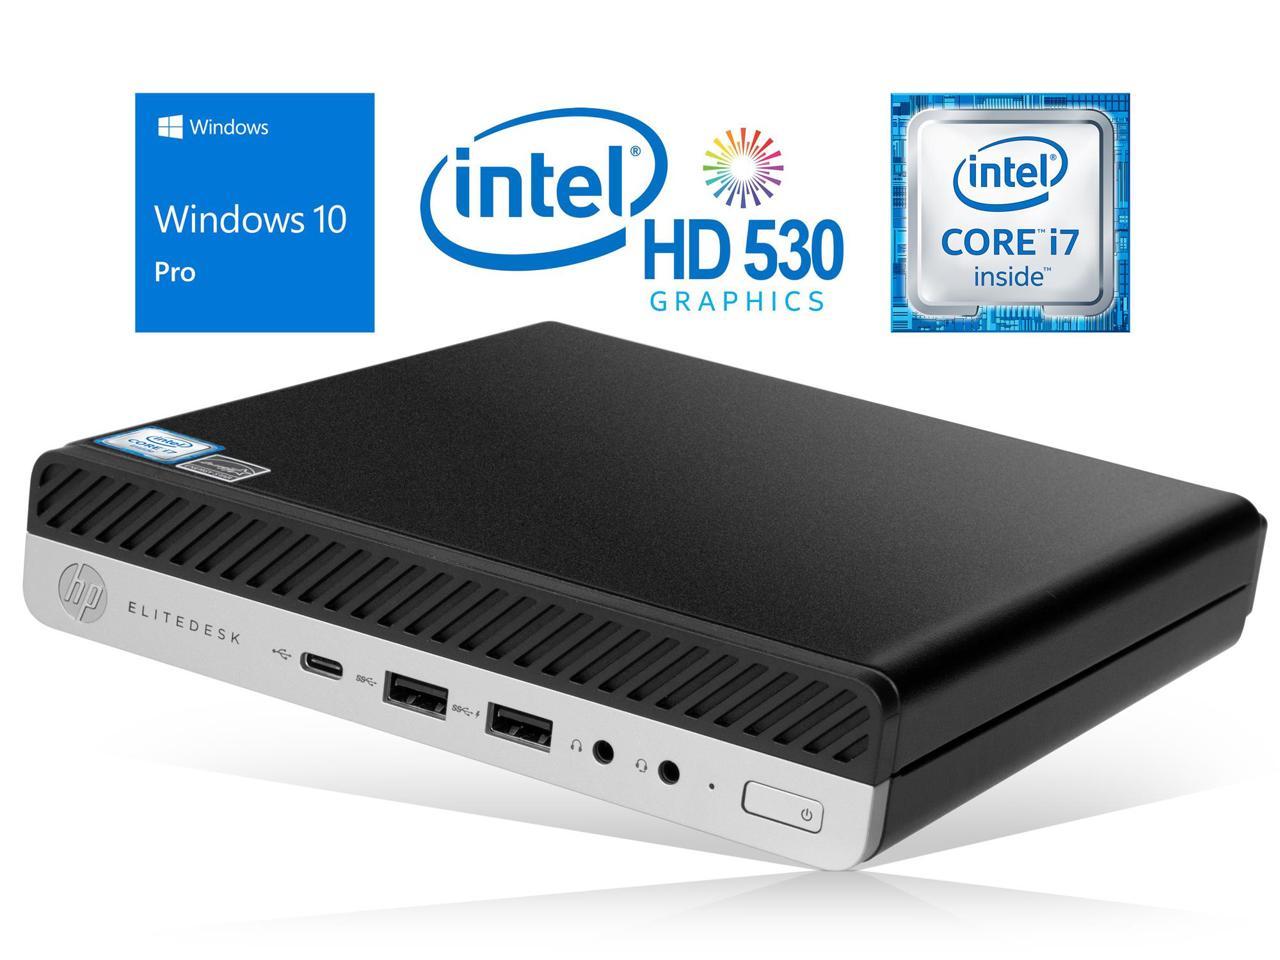 HP EliteDesk 800 G3 Mini PC, Intel Core i7-6700 Upto 4.0GHz, 8GB RAM, 256GB SSD, DisplayPort, Wi-Fi, Bluetooth, Windows 10 Pro